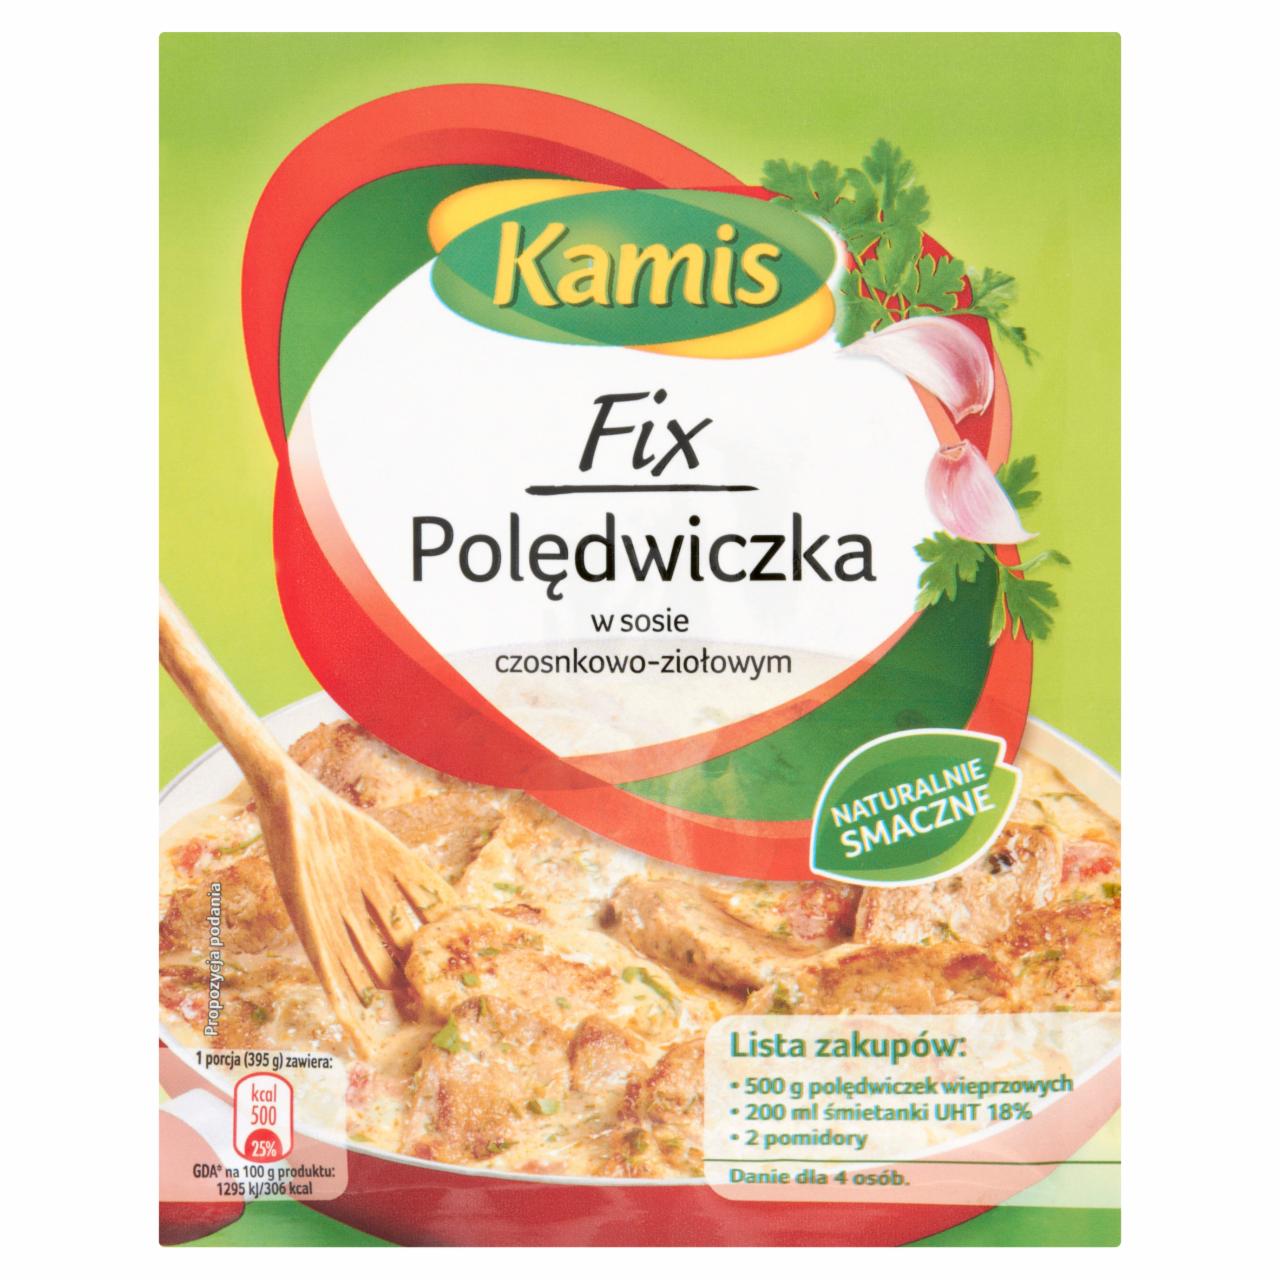 Zdjęcia - Kamis Fix Polędwiczka w sosie czosnkowo-ziołowym 40 g